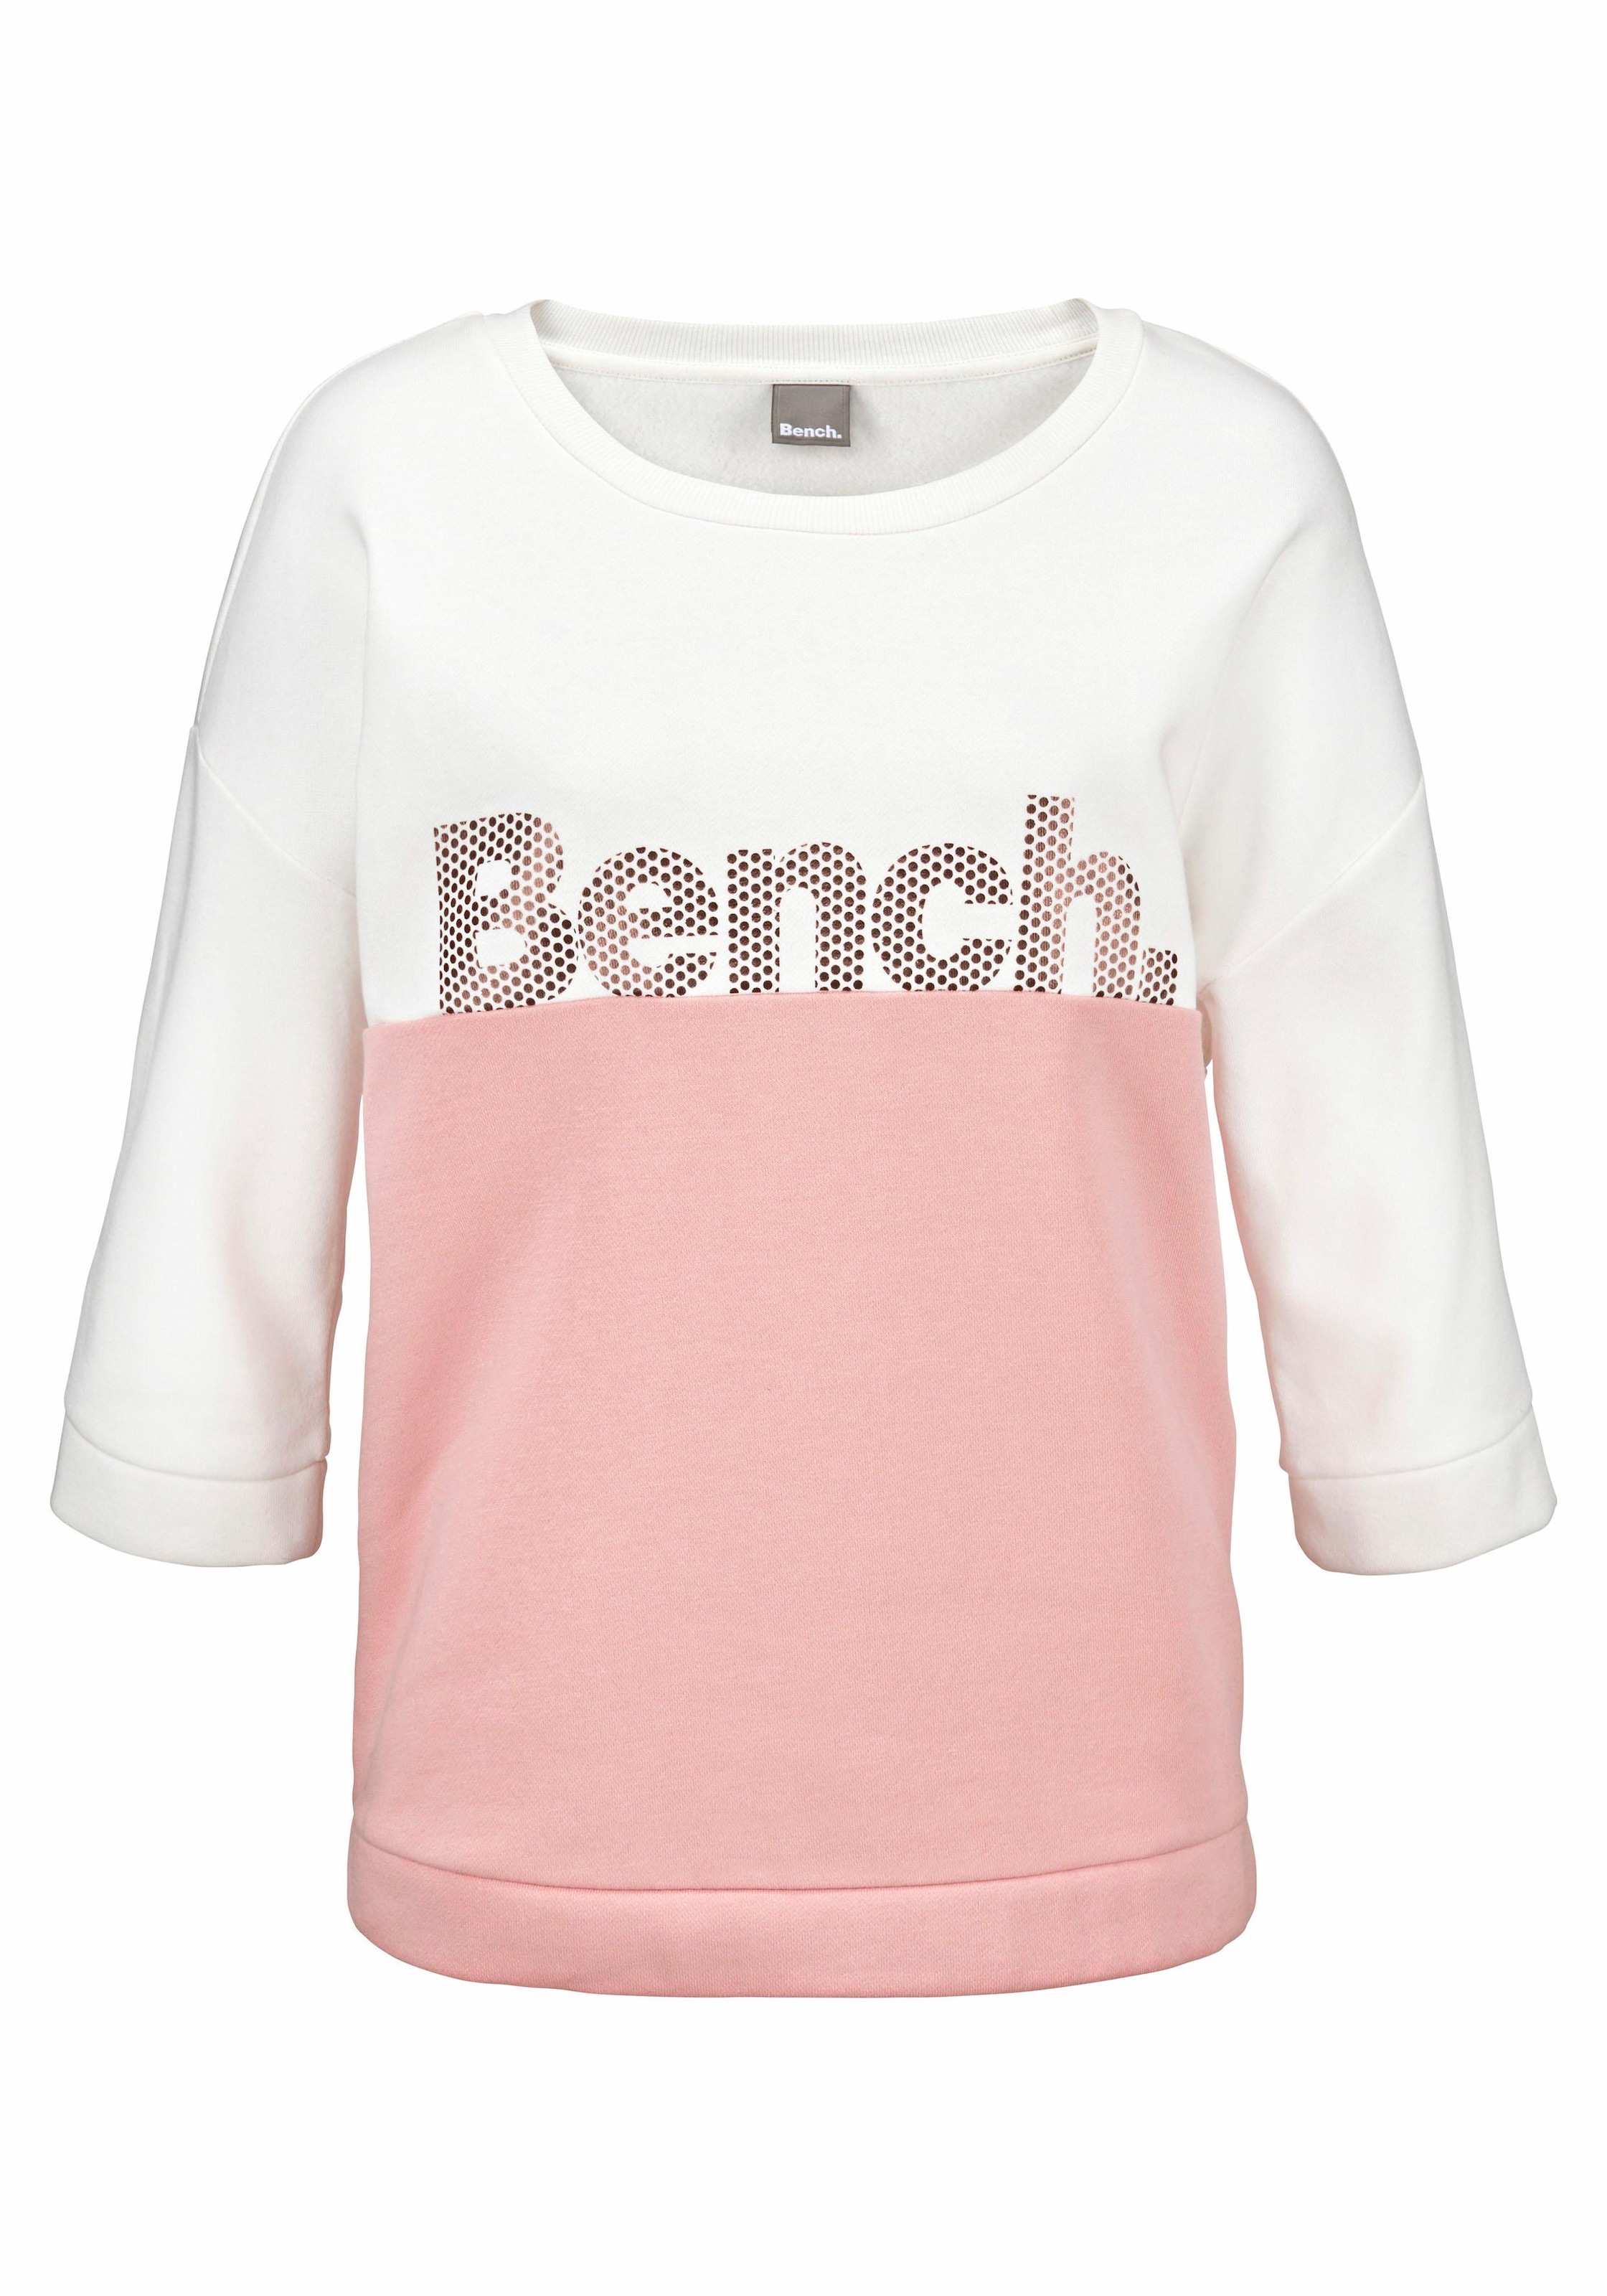 Bench. Sweatshirt, online Schweiz im Loungeanzug Design, kaufen Colorblocking bei Loungewear, Jelmoli-Versand